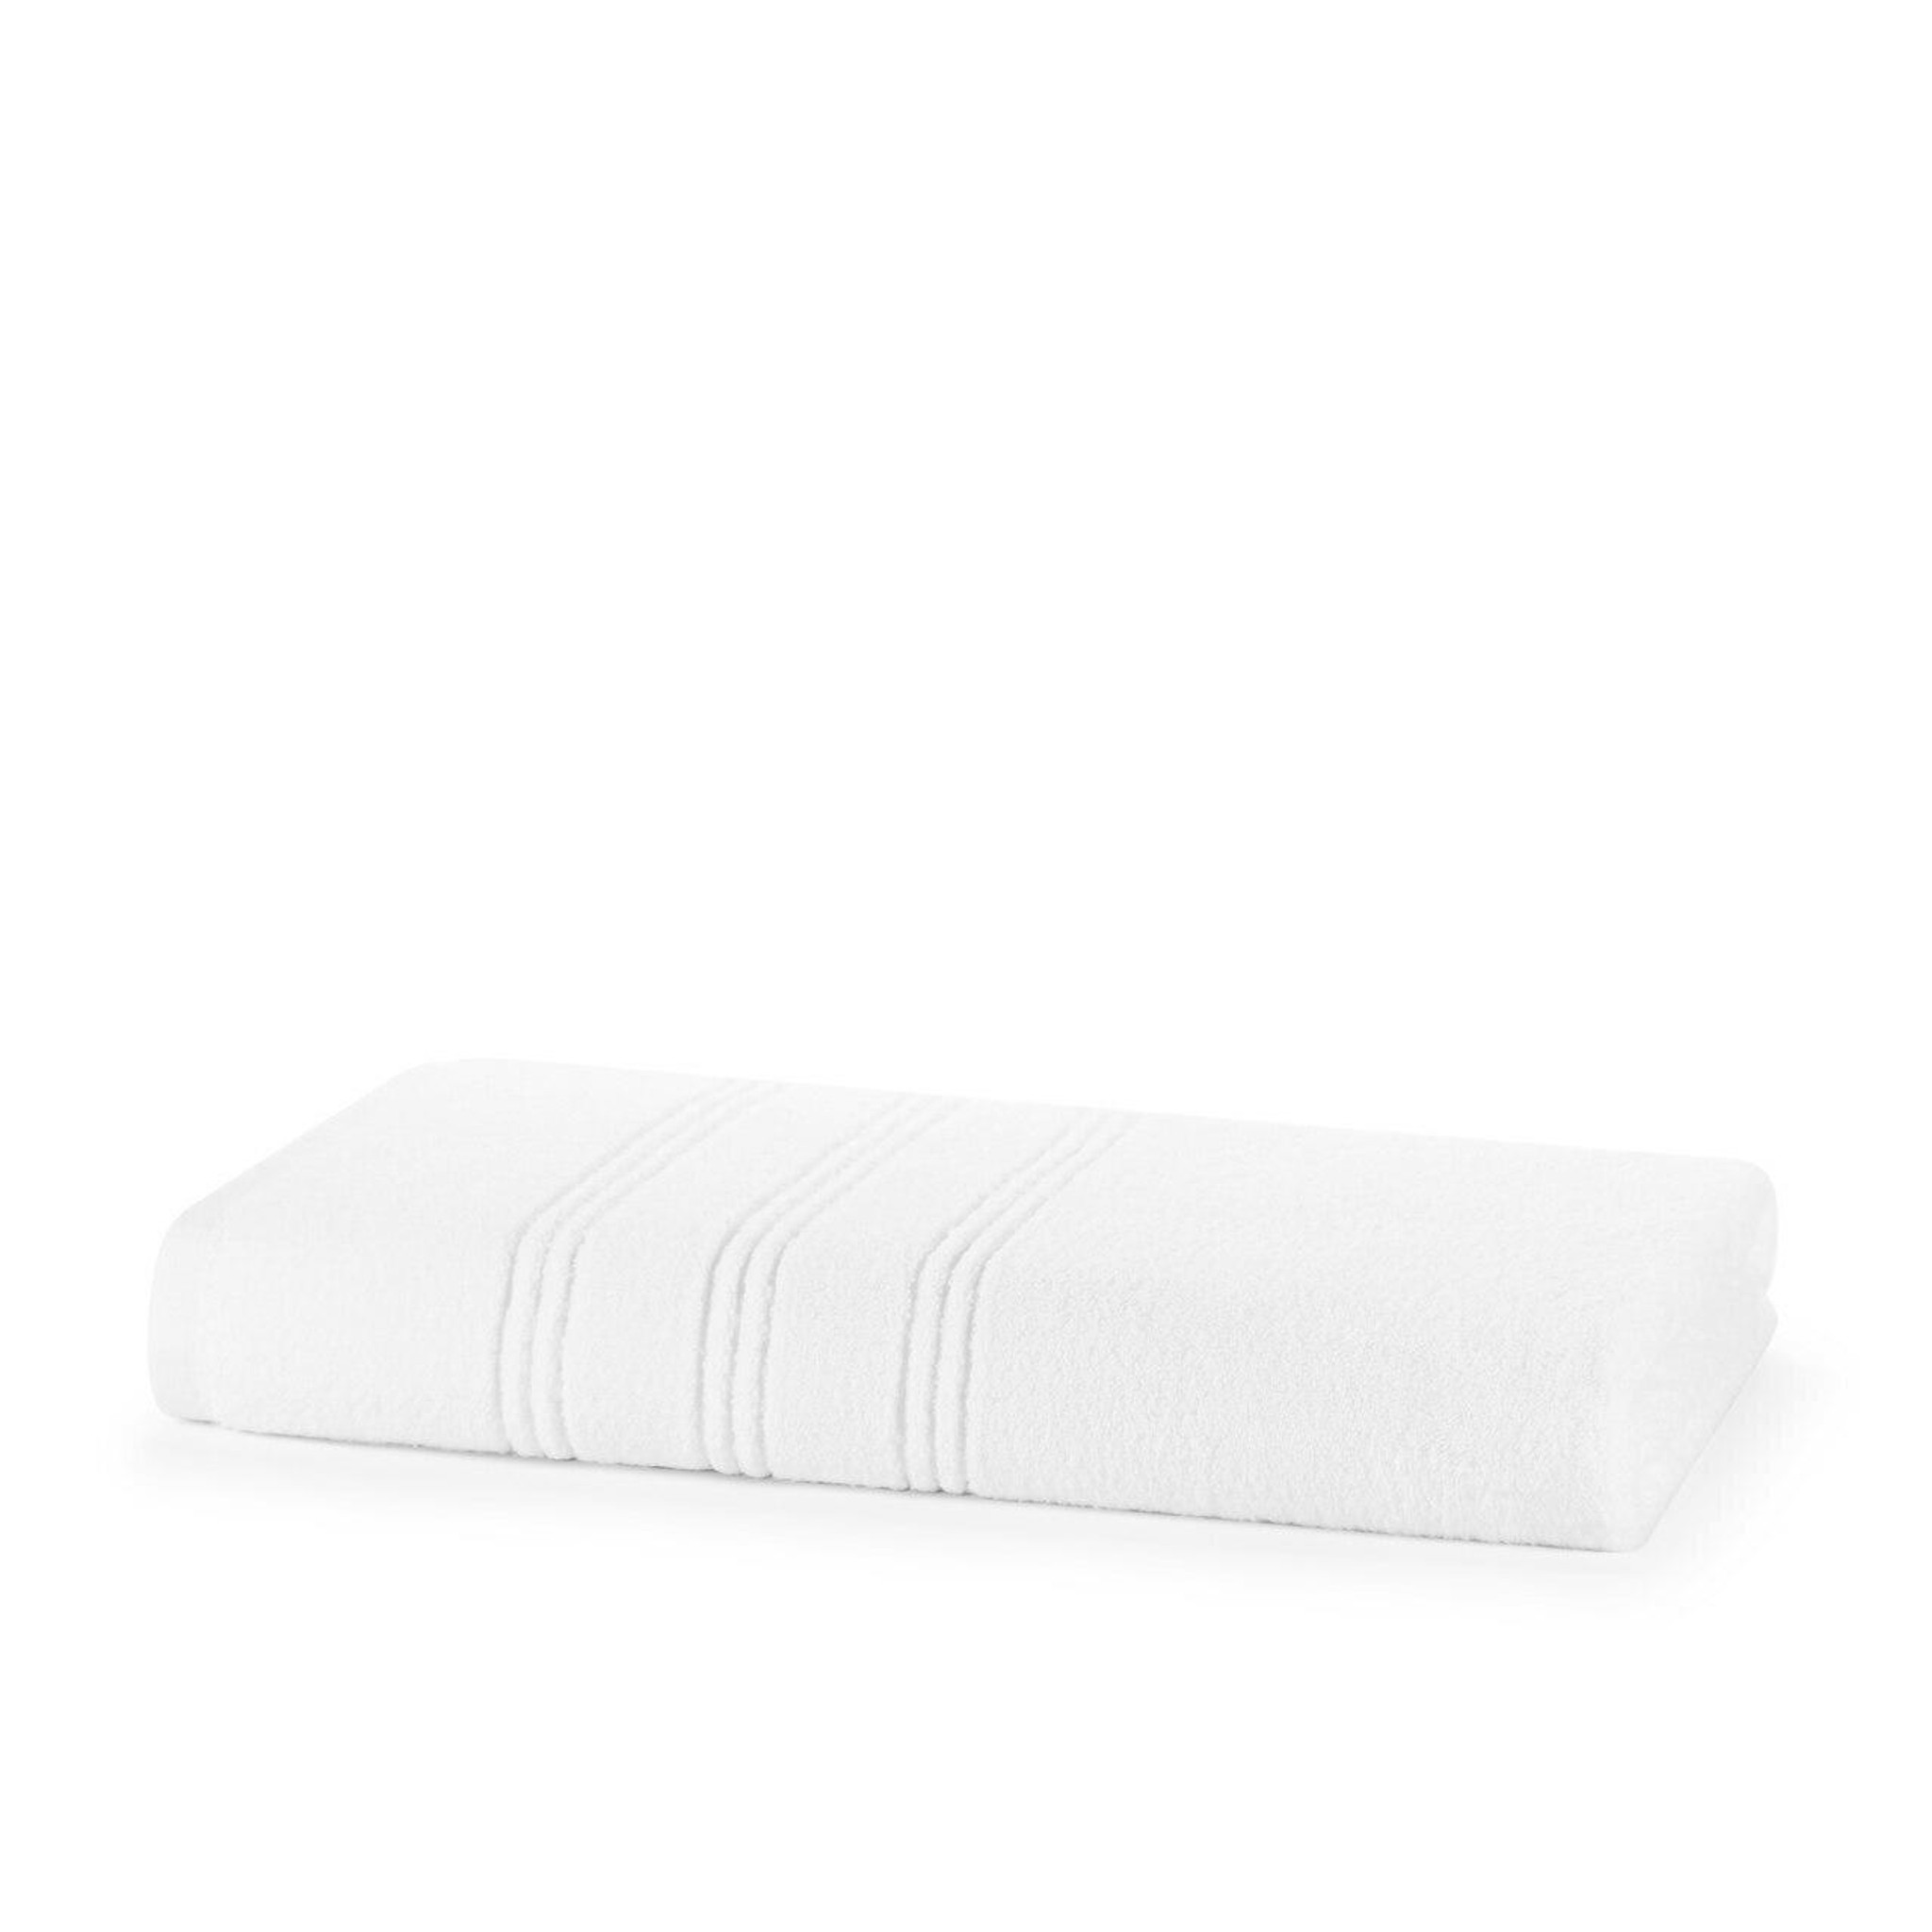 Wholesale 600 GSM 100% Cotton Zero Twist Bath Sheets